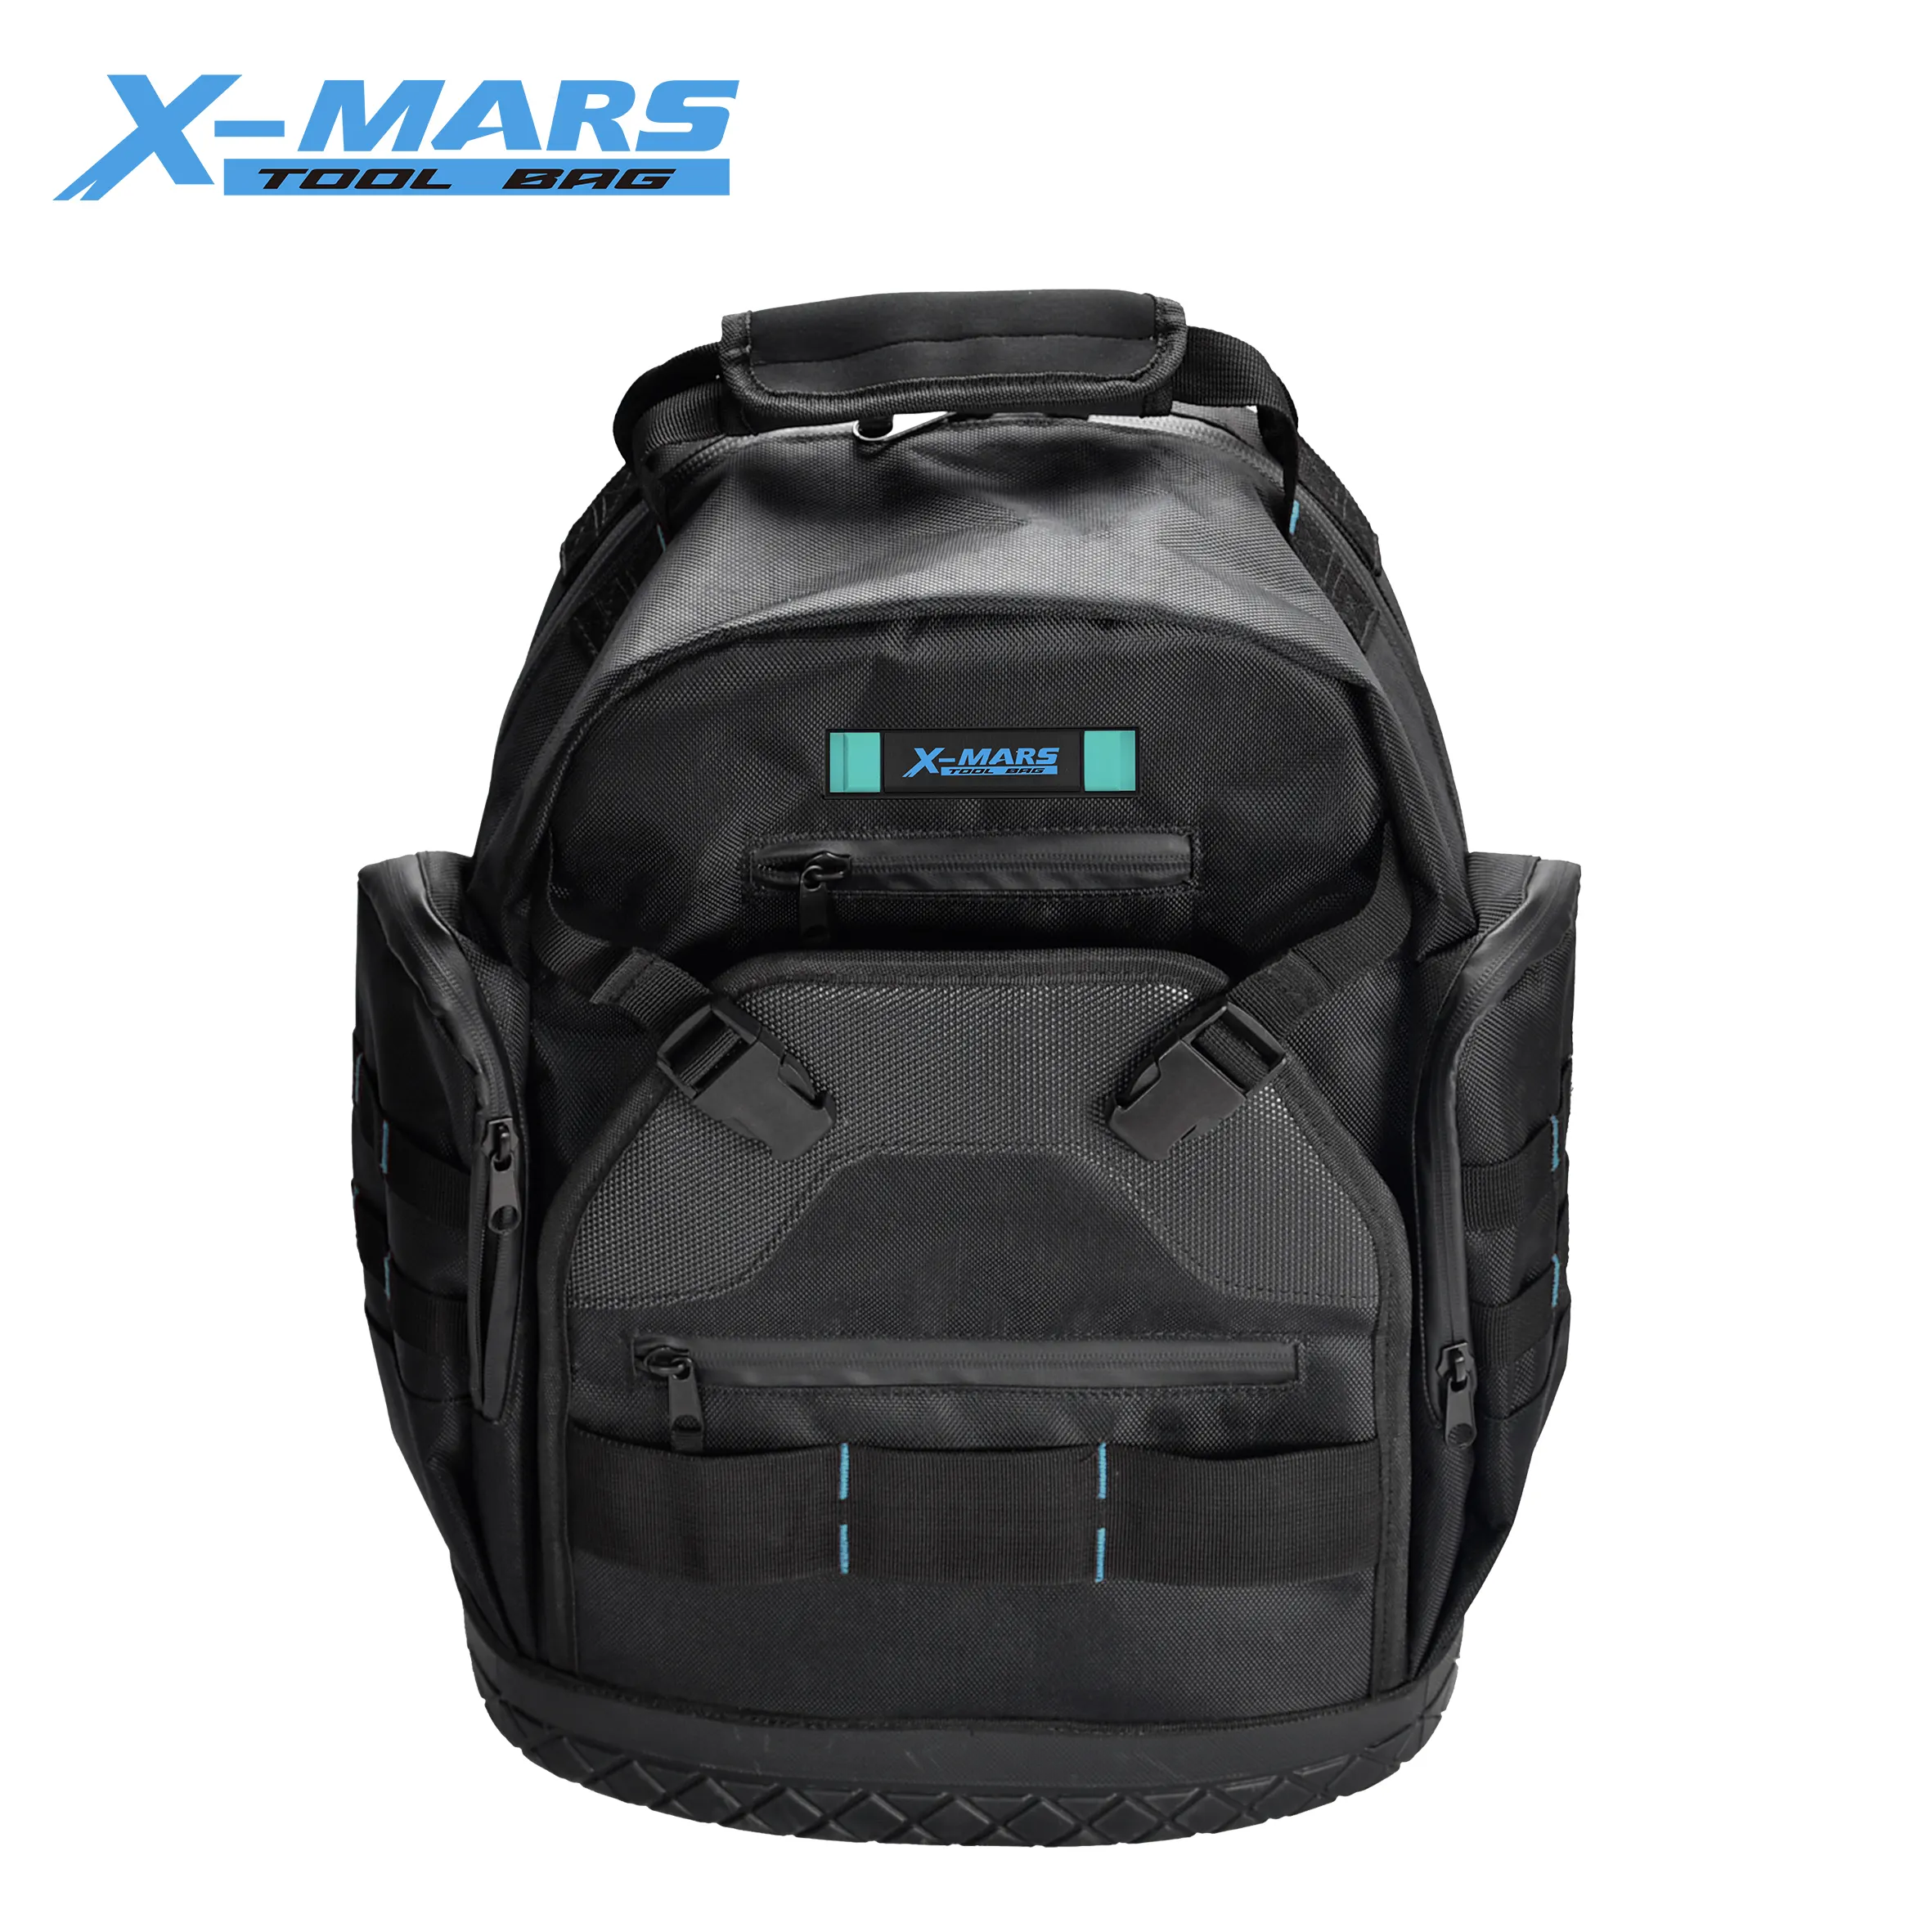 X-mars alet düzenleyici profesyonel ağır depolama alet çantası sırt çantası kauçuk taban ile